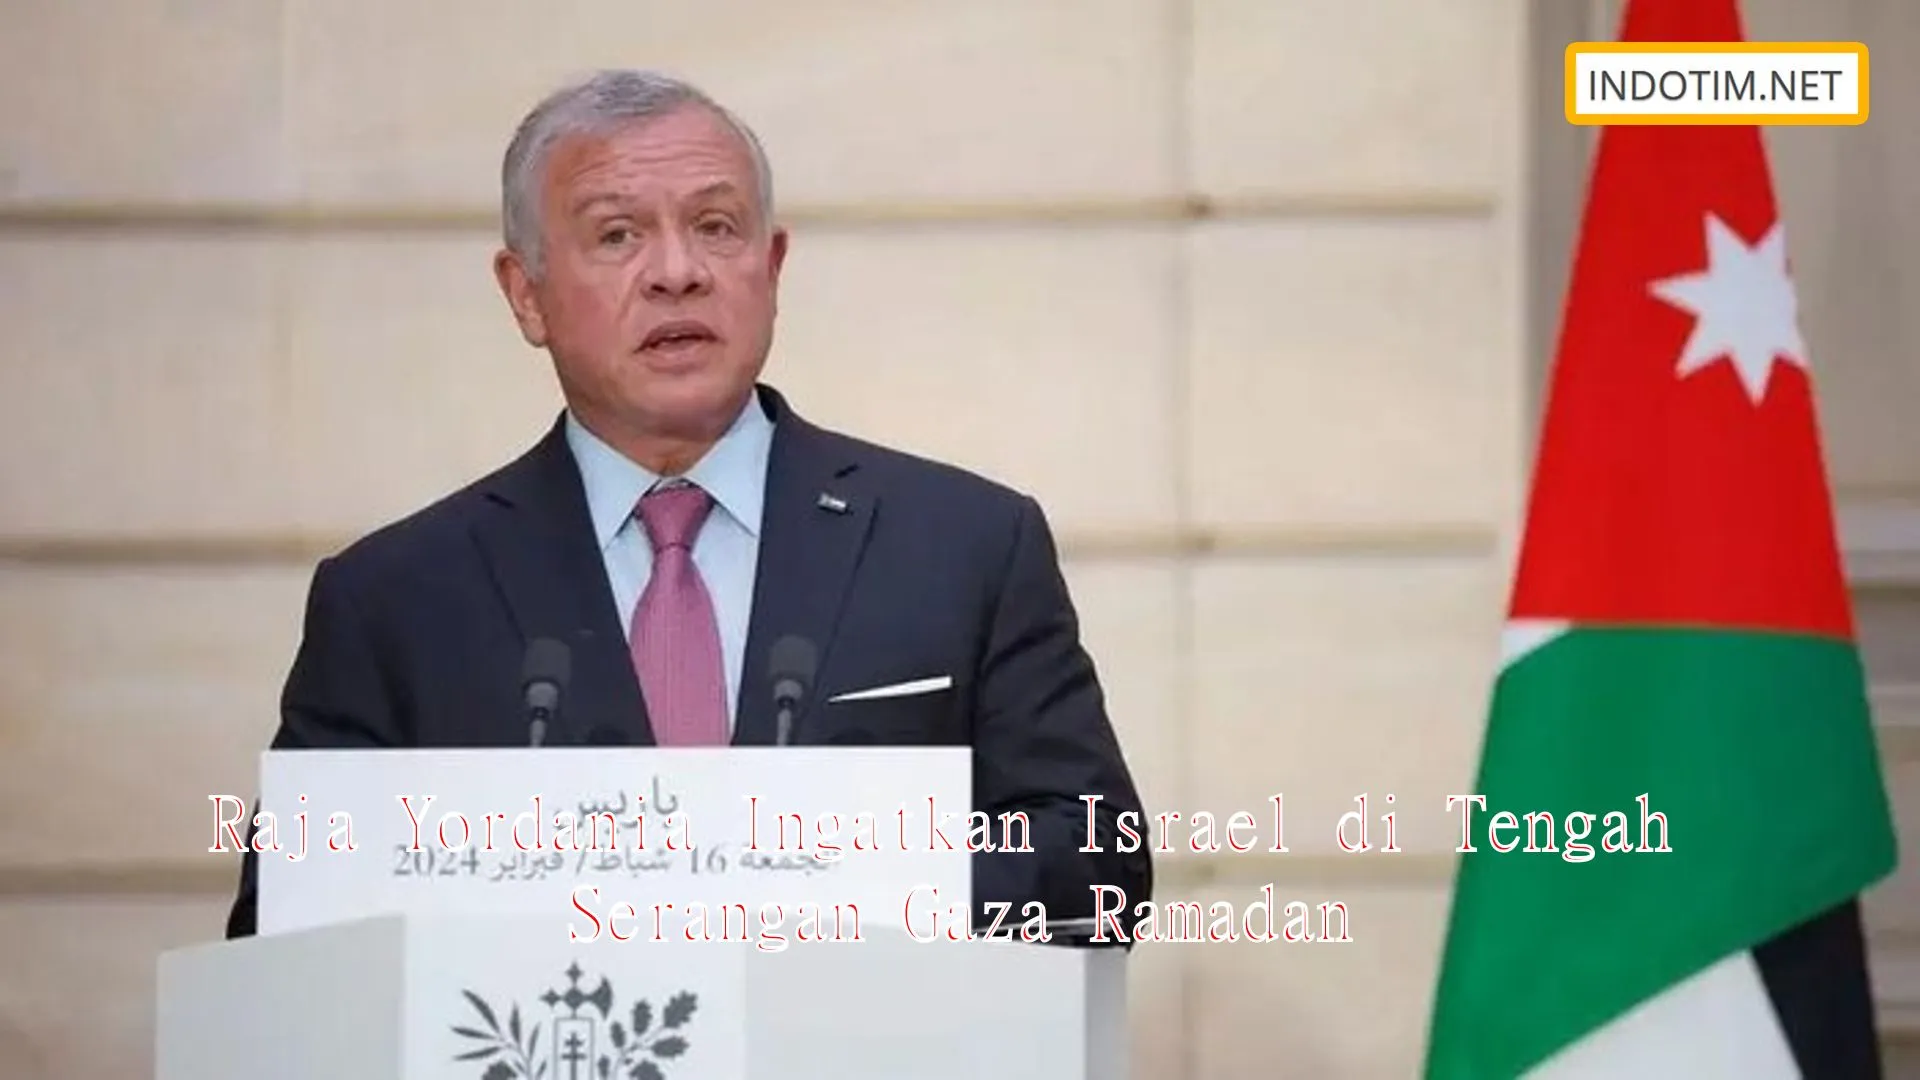 Raja Yordania Ingatkan Israel di Tengah Serangan Gaza Ramadan